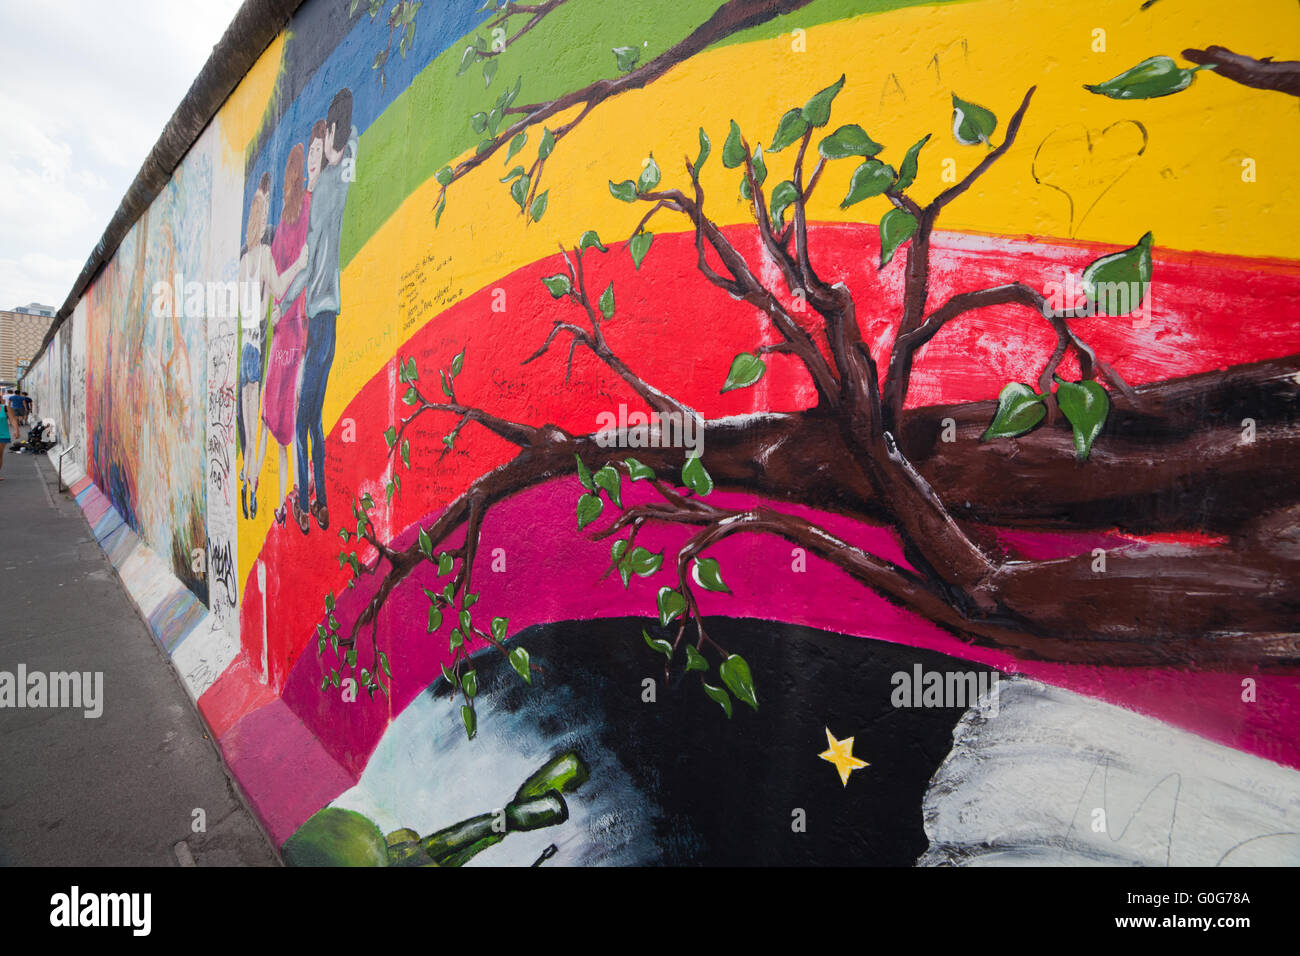 East Side Gallery - Berlin Wall. Berlin, Germany Stock Photo